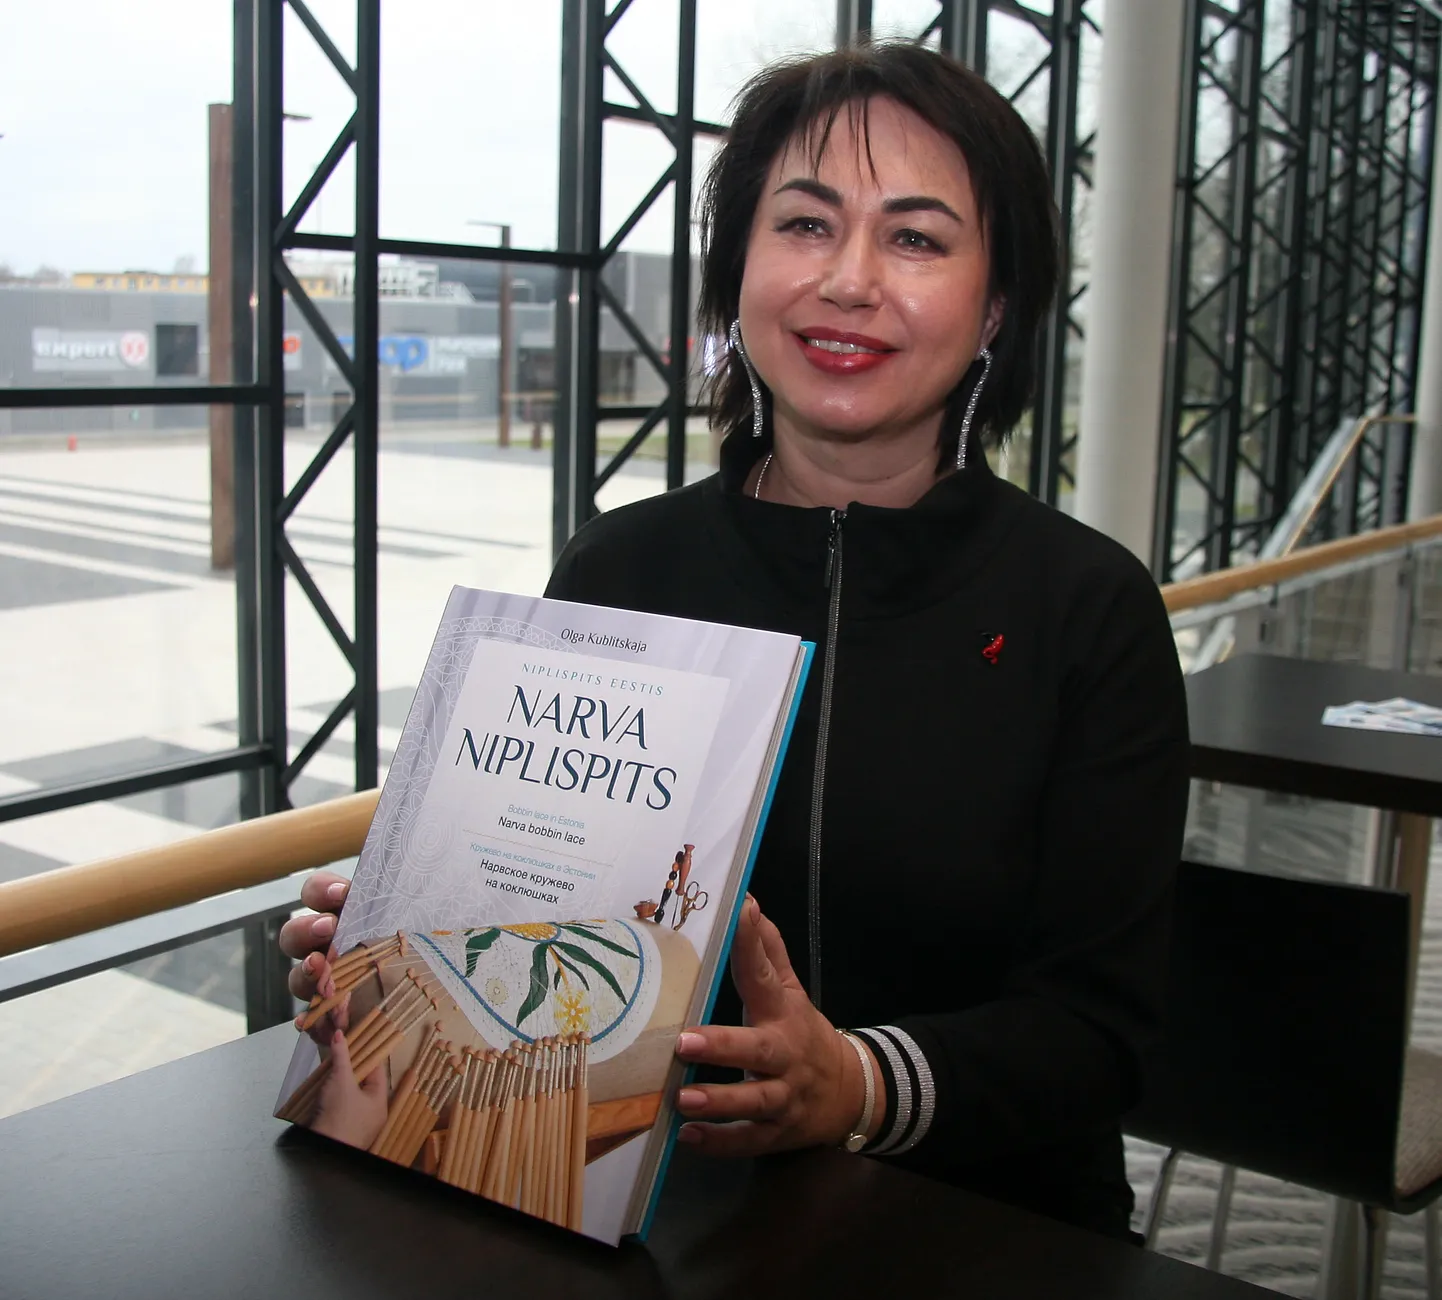 Три года назад Ольга Кублицкая презентовала в Йыхви свою книгу, рассказывающую о том, как появилось и развивается искусство кружевоплетения в Европе и нашей стране, а сейчас покажет новую коллекцию кружева.